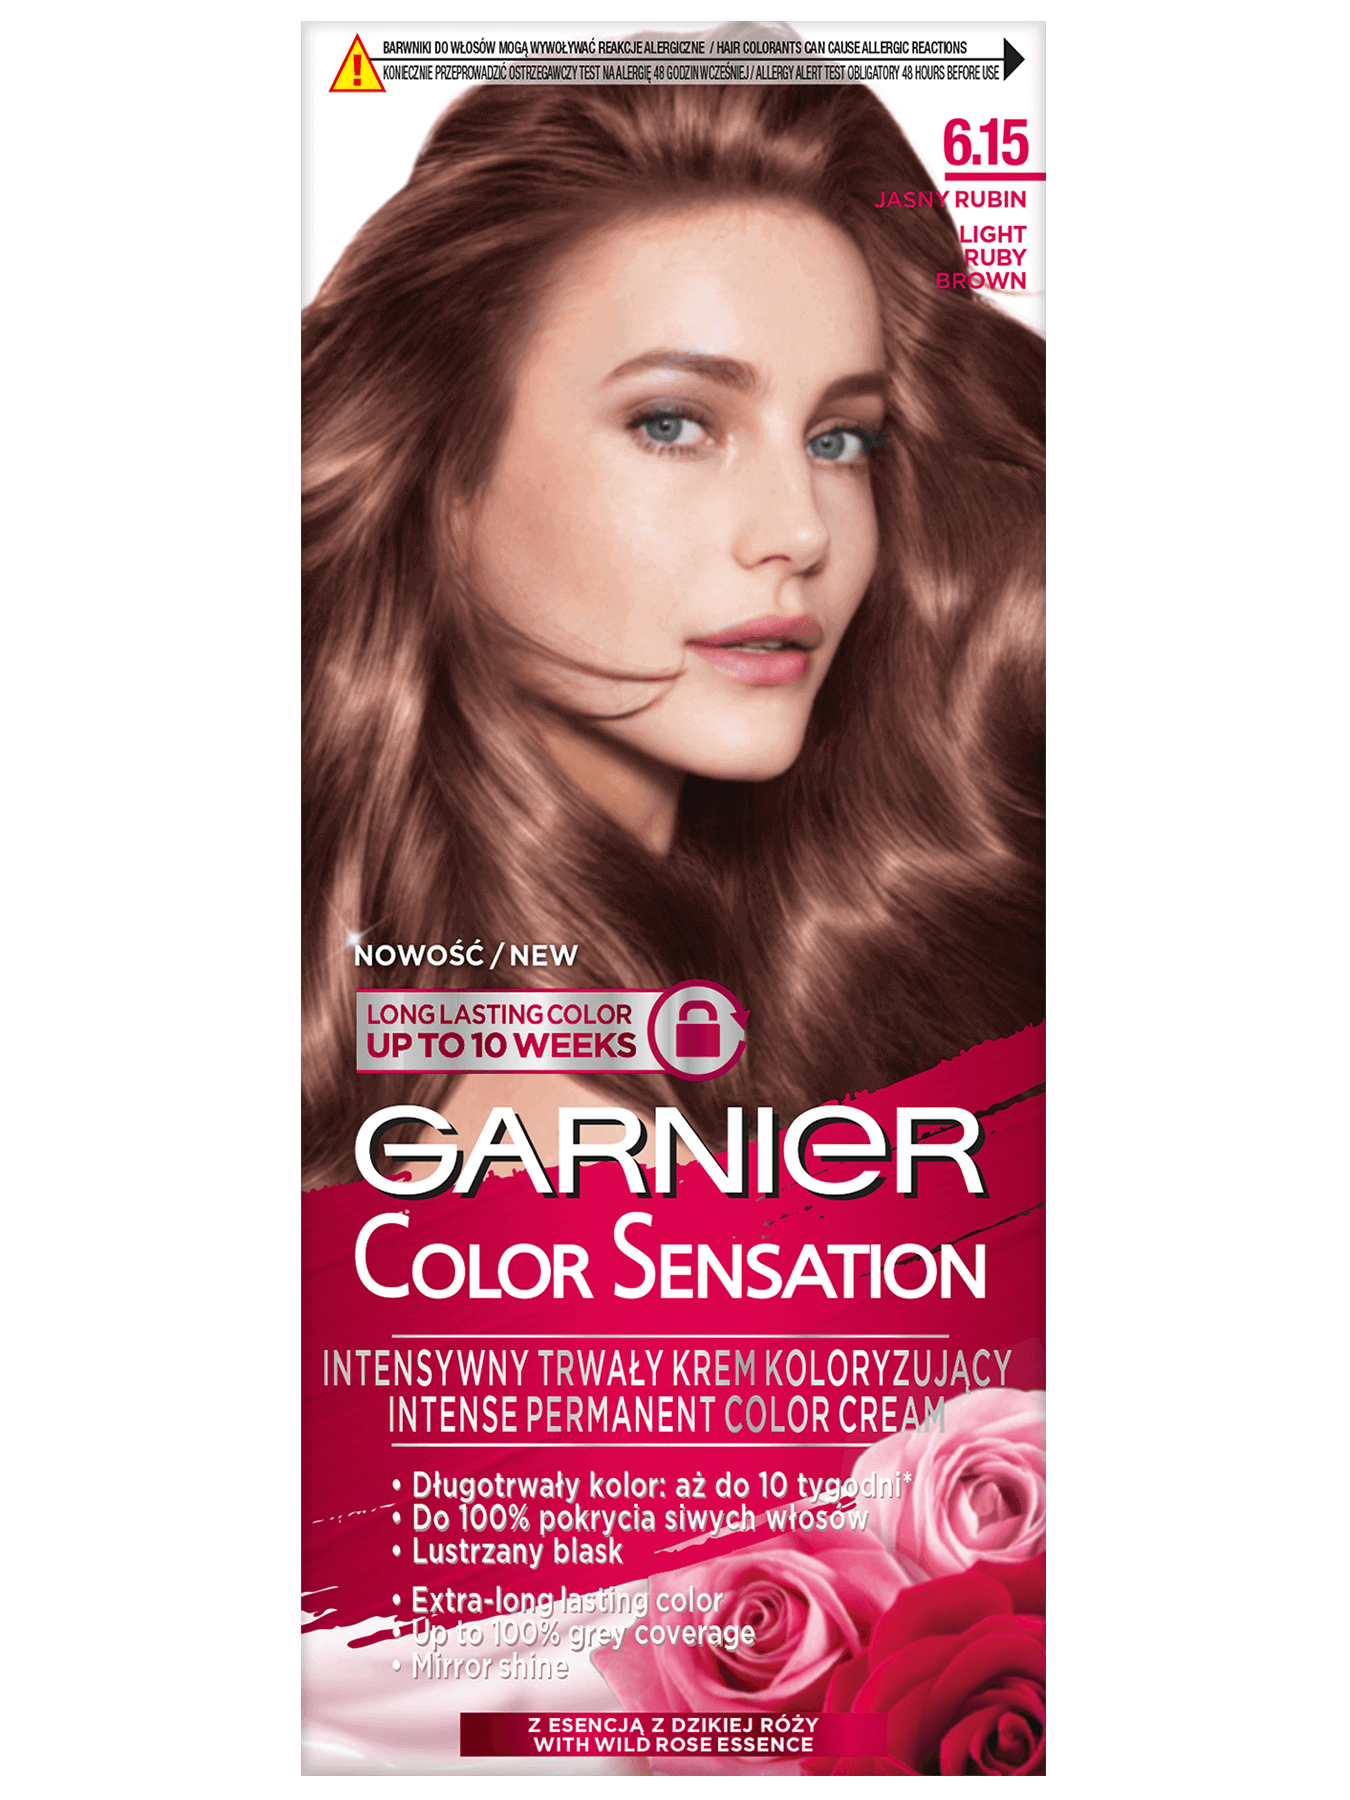 garnier color sensation 6 1 5 jasny rubinowy braz 1350x1800